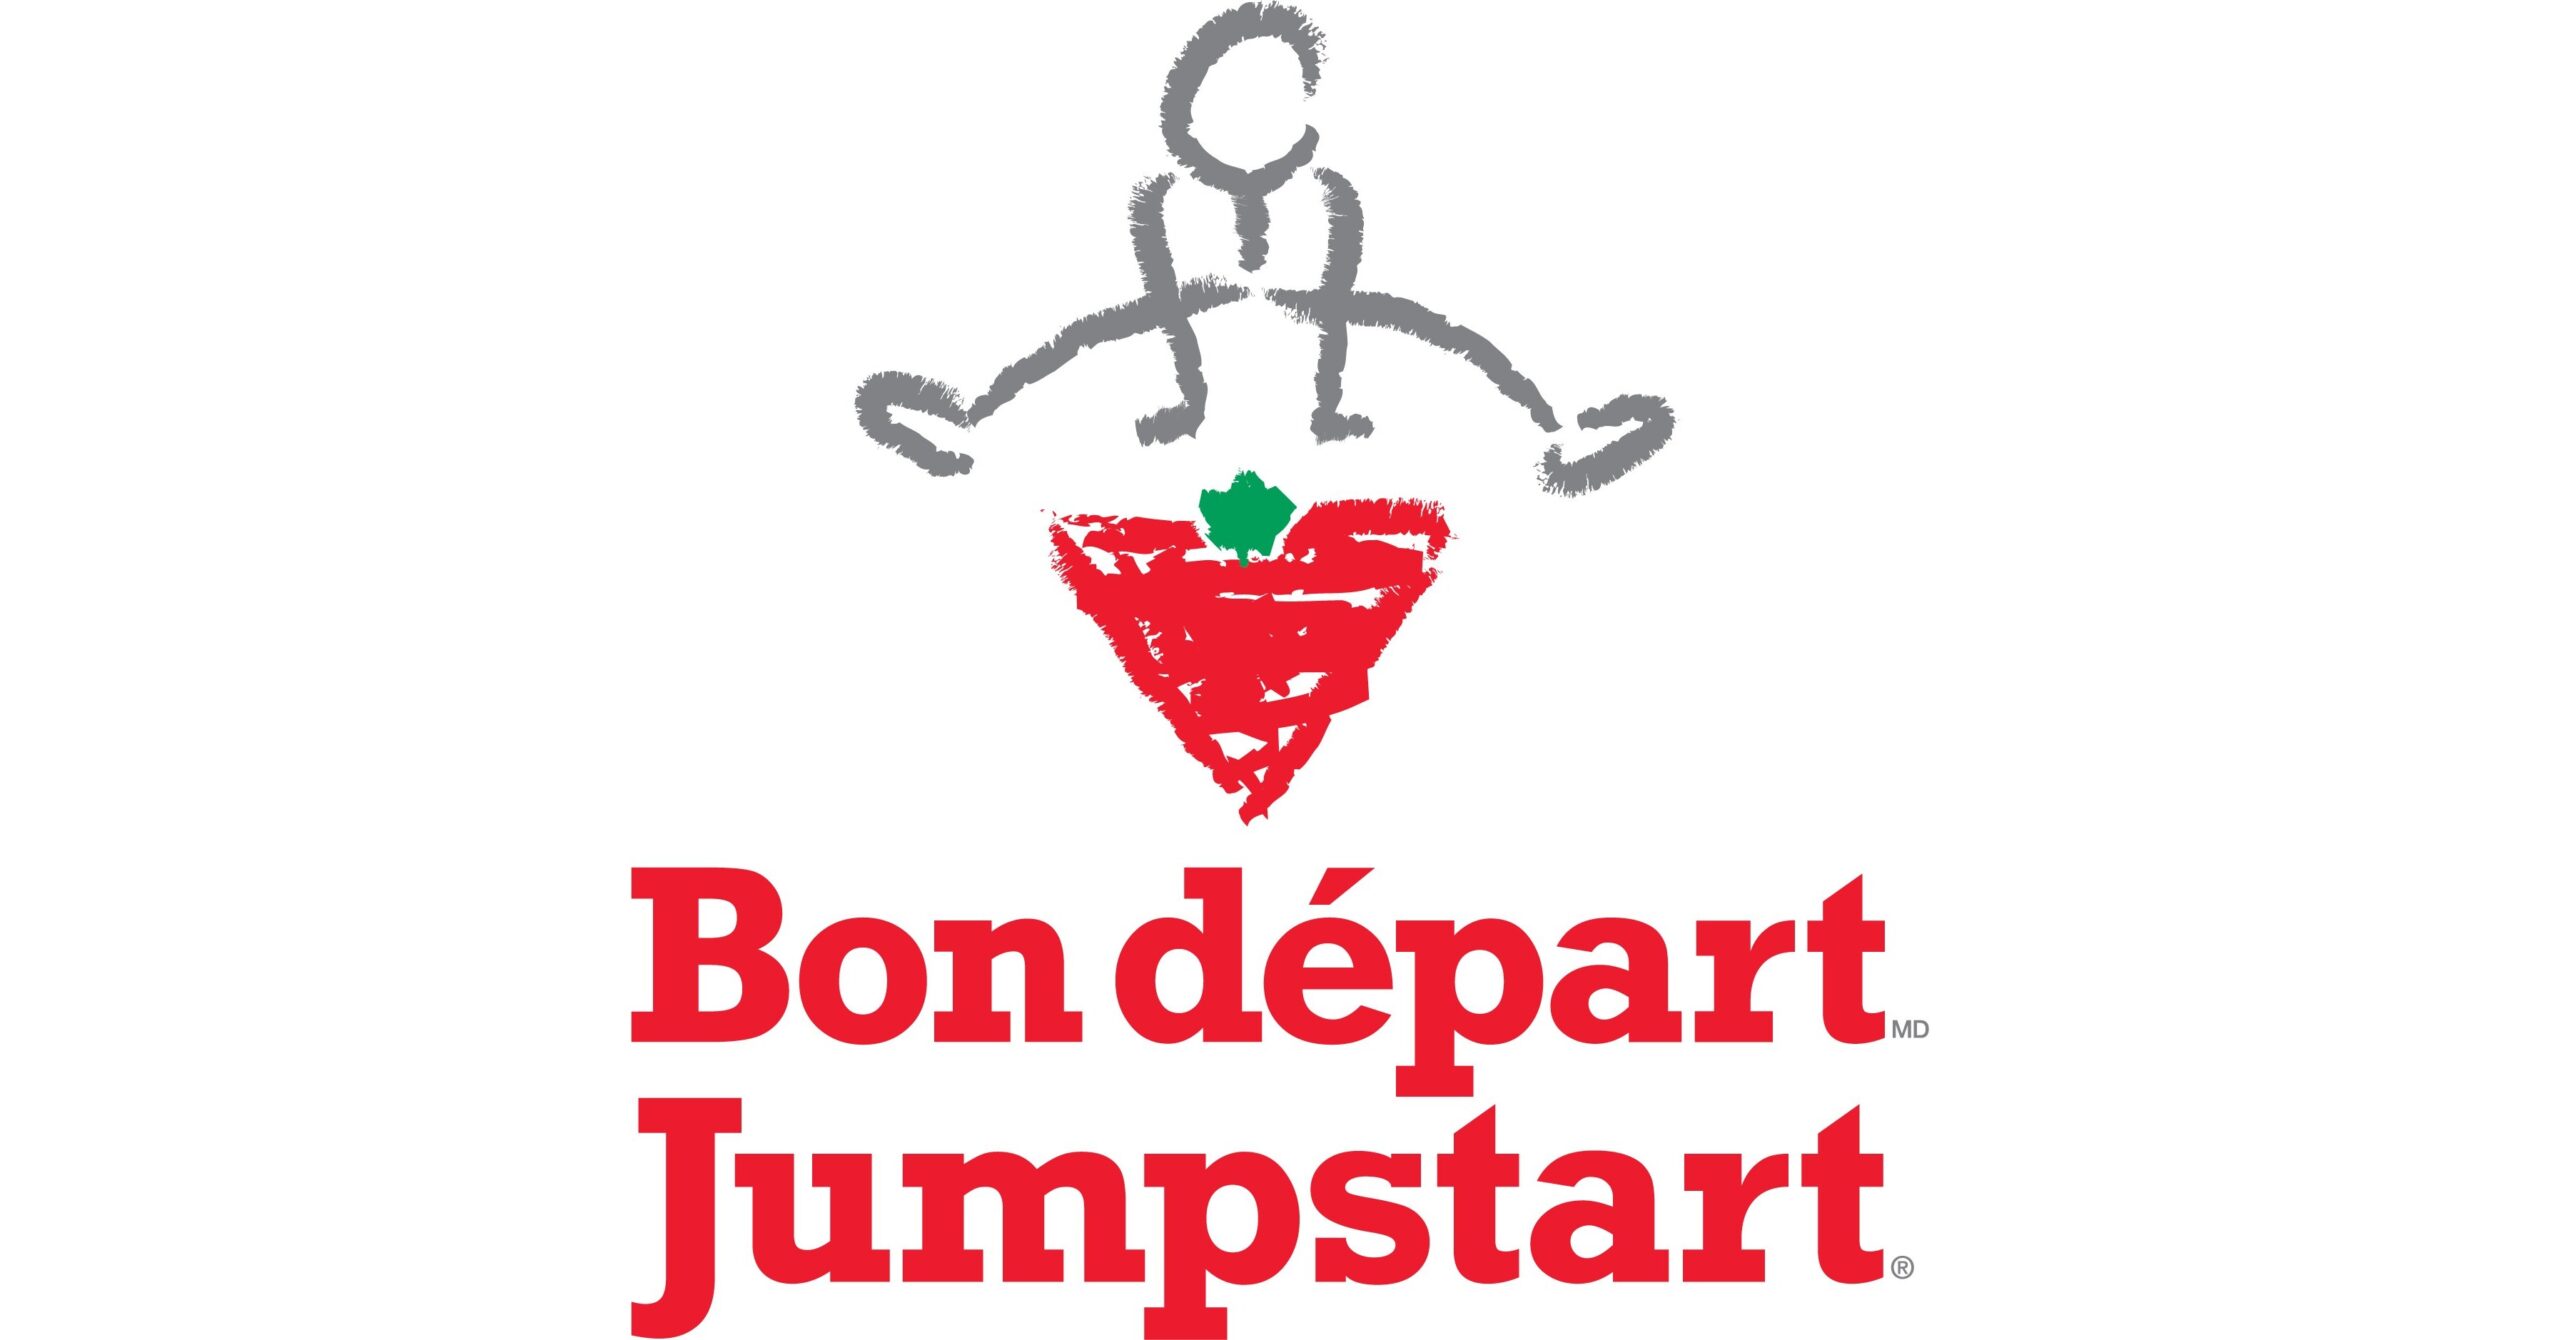 Canadian Tire Jumpstart-La Fondation Bon d-part de Canadian Tire